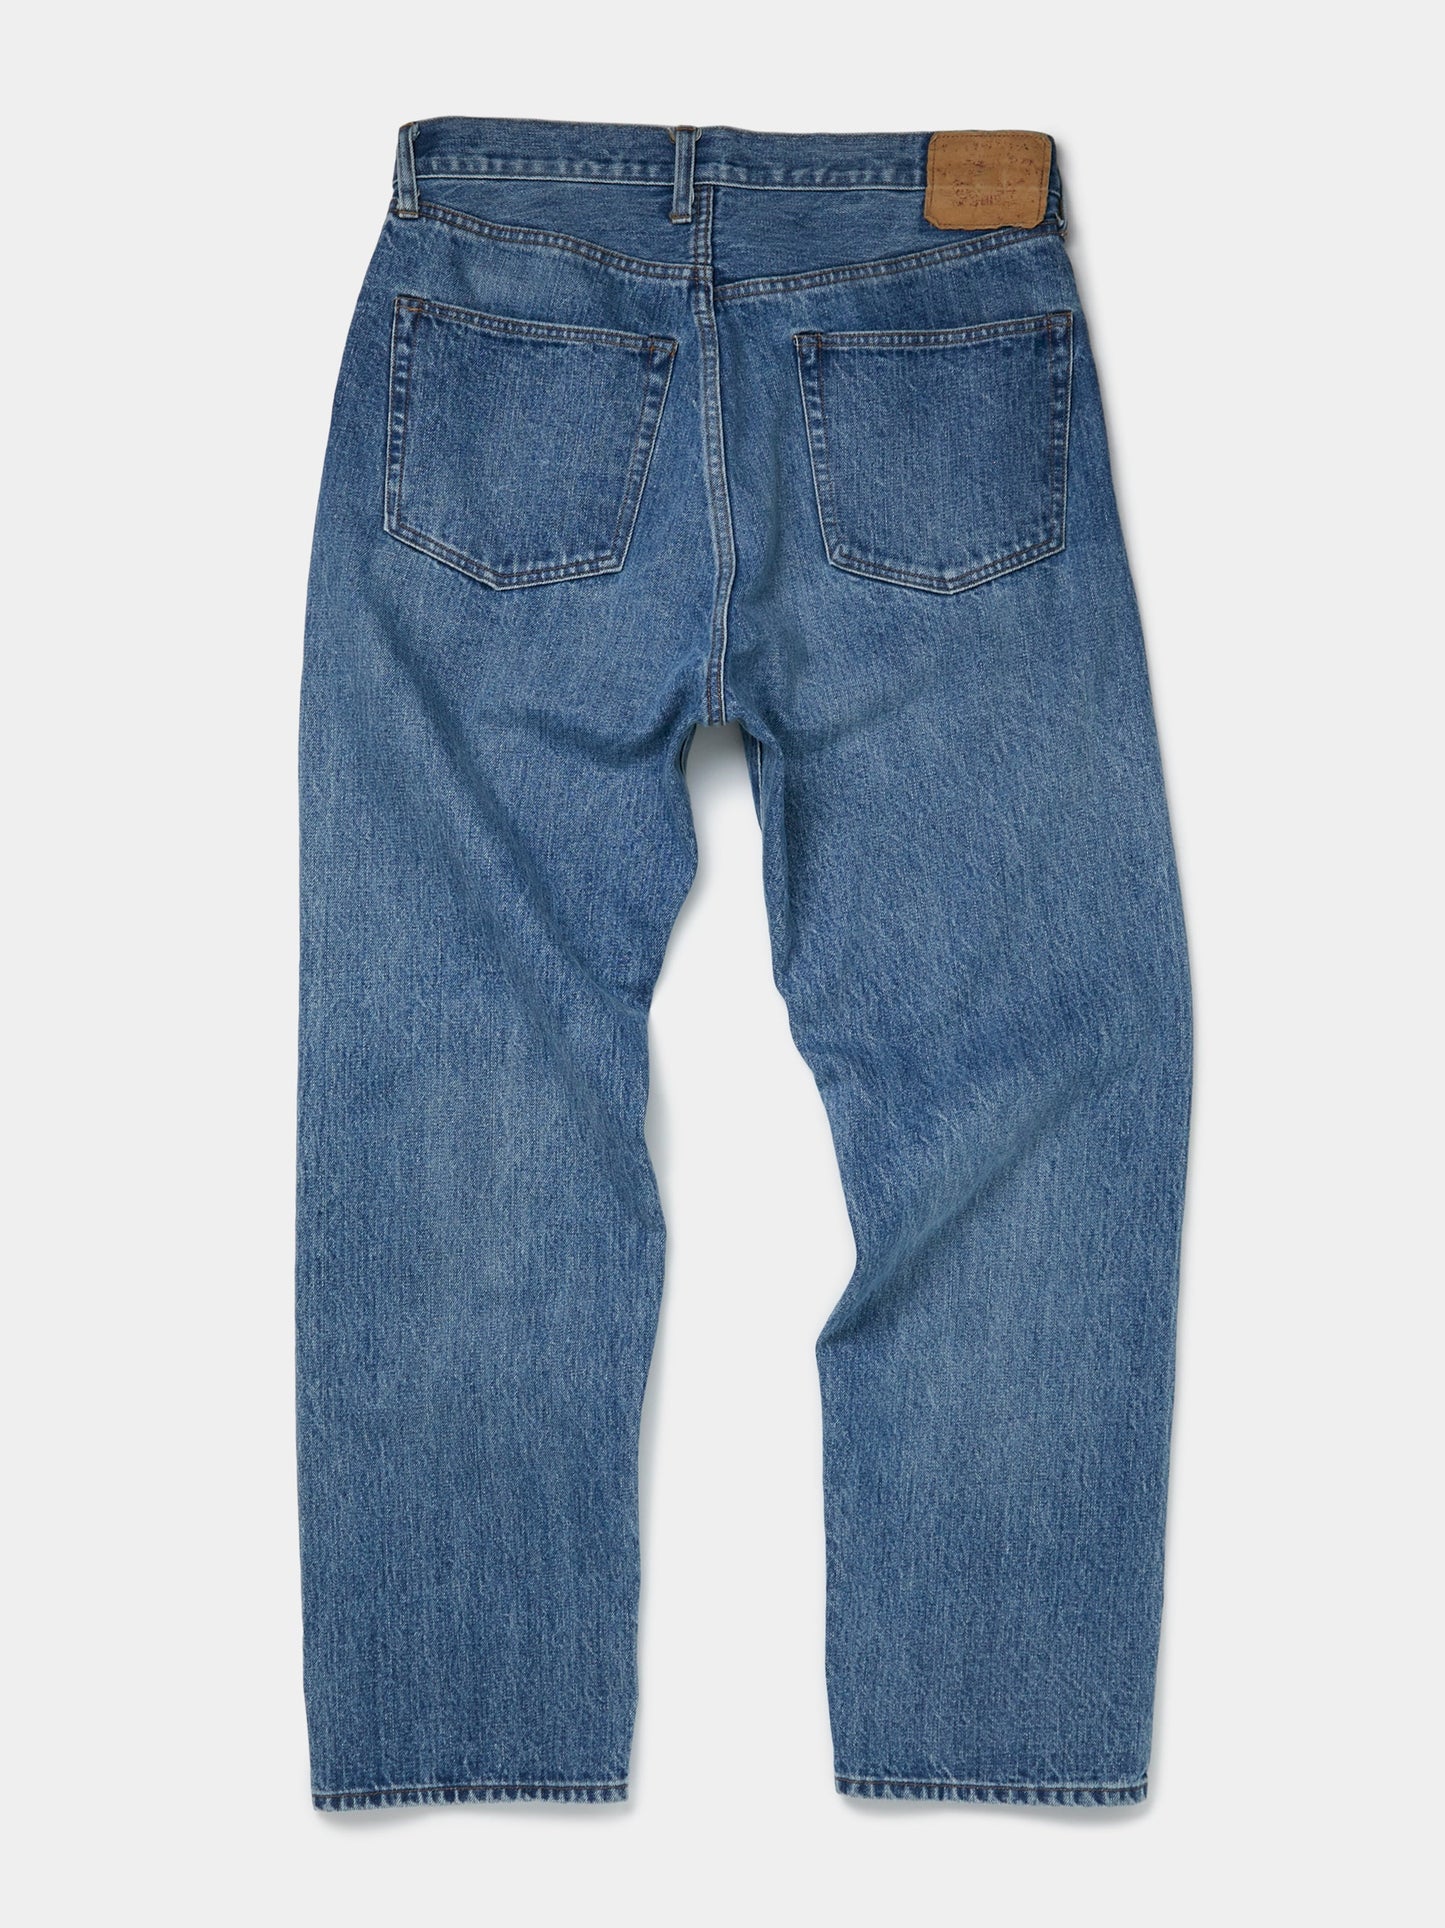 Classic Indigo Denim Jeans